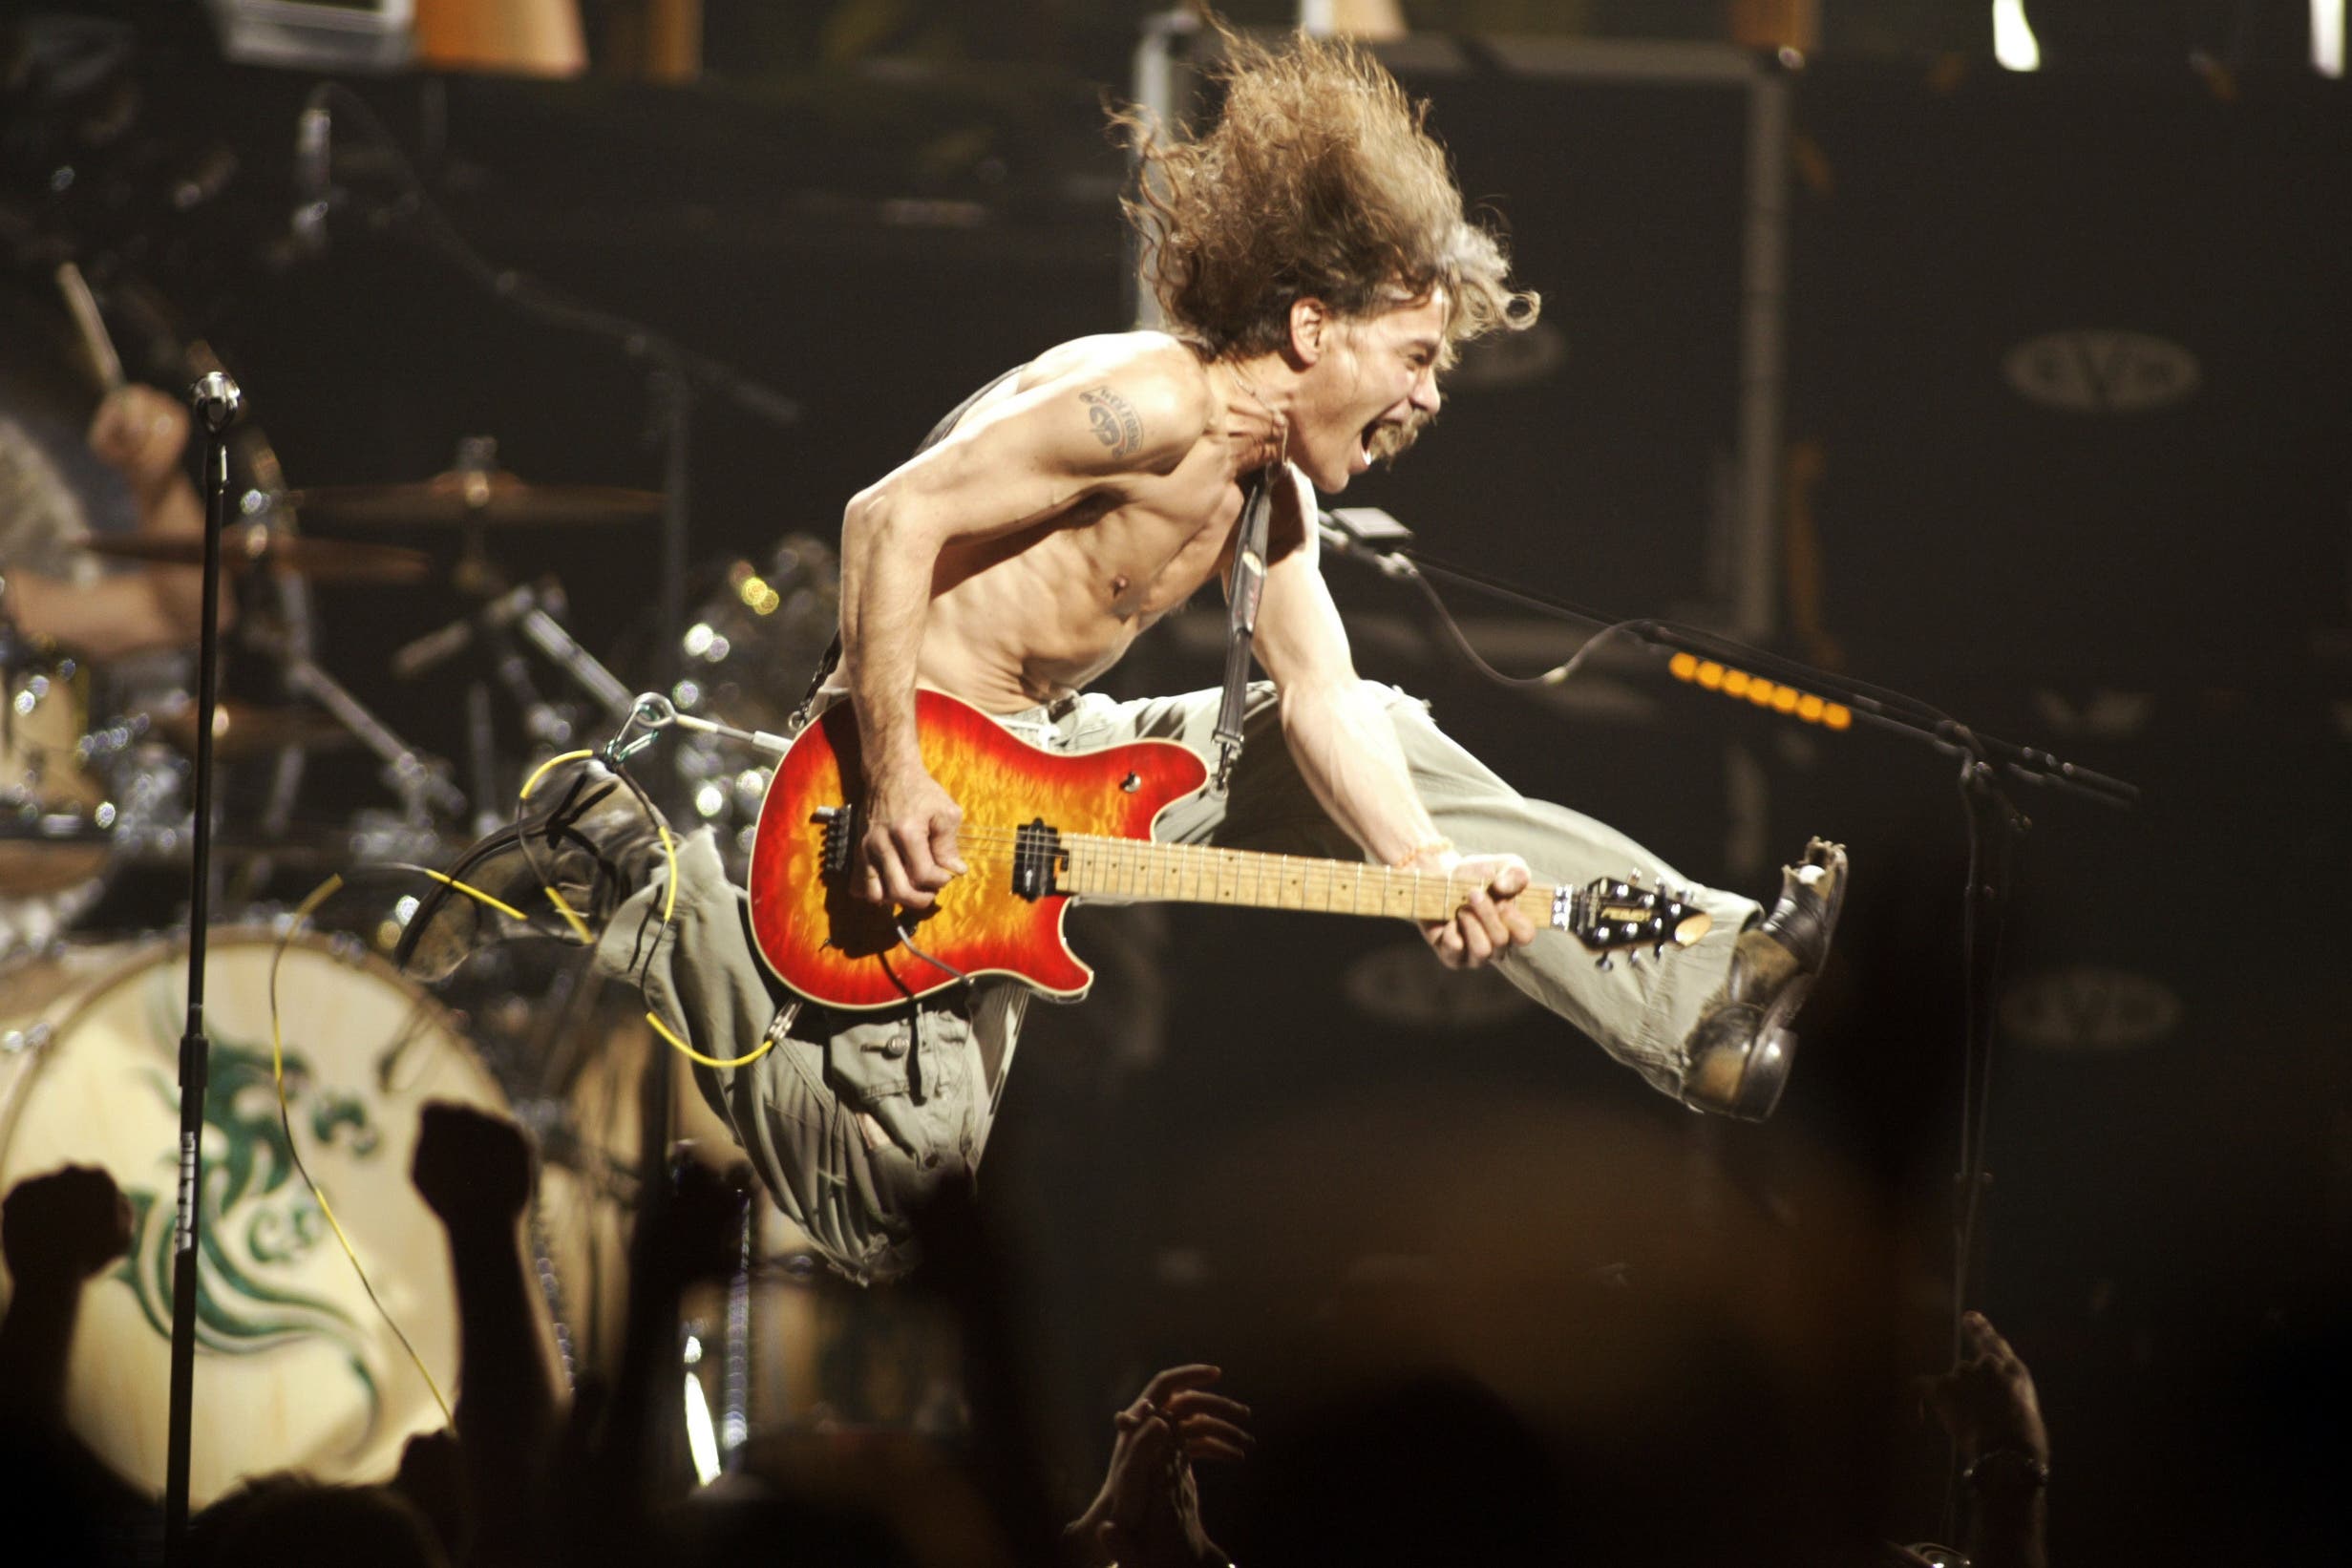 Eddie Van Halen beim finalen Akkord von «Jump» während einem Konzert in der Continental Airlines Arena in East Rutherford, New Jersey. Eddie Van Halen, der Gitarrenvirtuoso, dessen Geschwindigkeit, Kontrolle und Innovation auf seinem Instrument die mit seinem Bruder gegründete Band zu einer der erfolgreichsten im Hardrockgruppe machten, starb am Dienstag, 6. Oktober 2020, an Krebs.